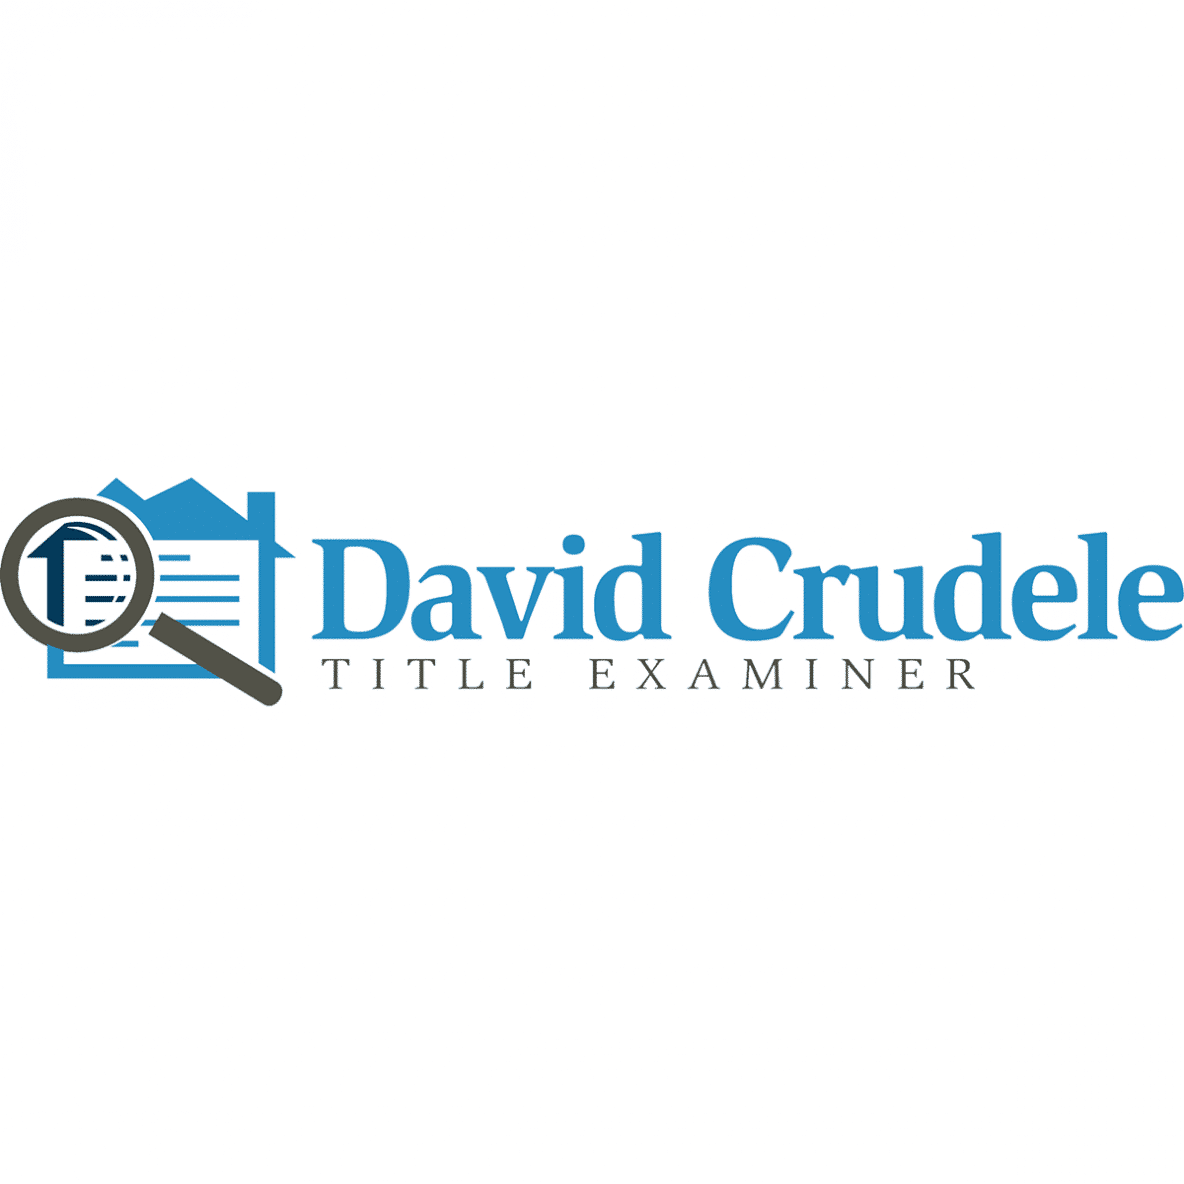 David Crudele Title Examiner Logo